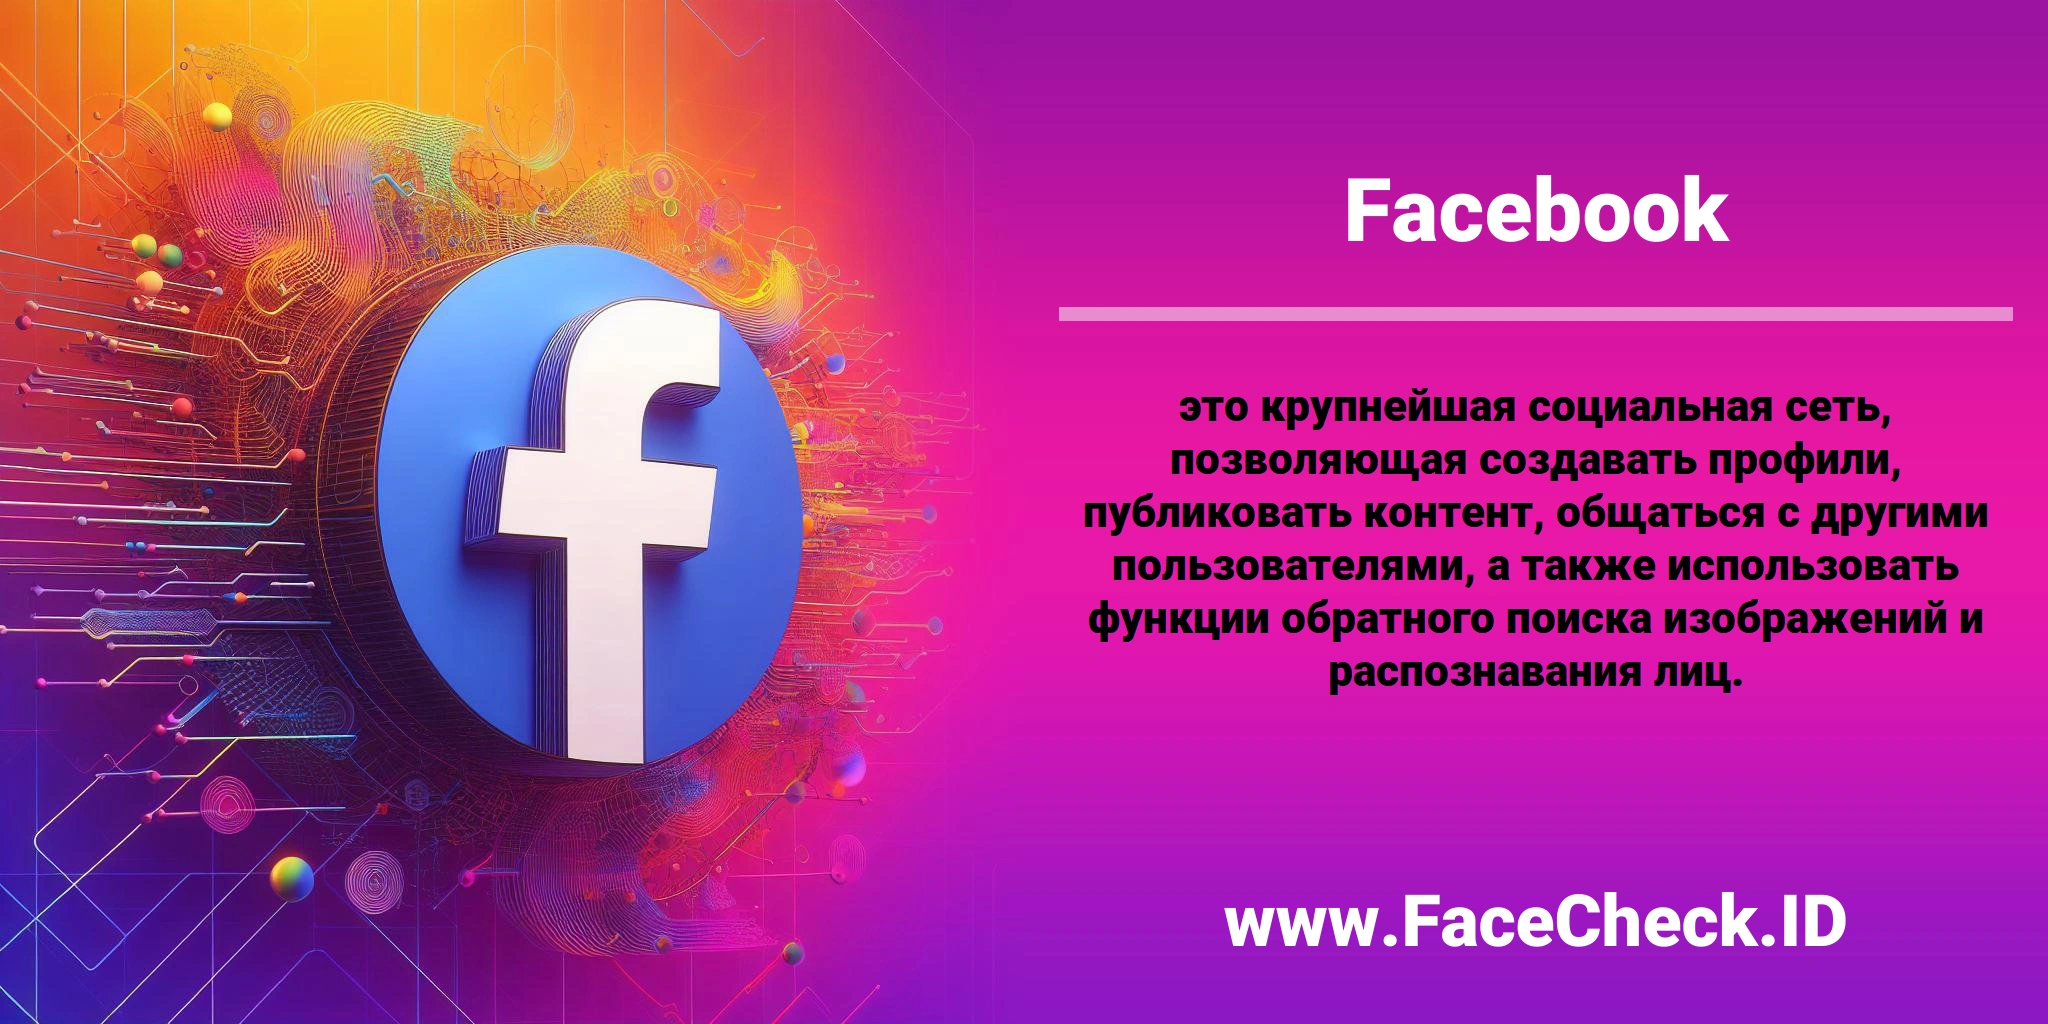 <b>Facebook</b> это крупнейшая социальная сеть, позволяющая создавать профили, публиковать контент, общаться с другими пользователями, а также использовать функции обратного поиска изображений и распознавания лиц.